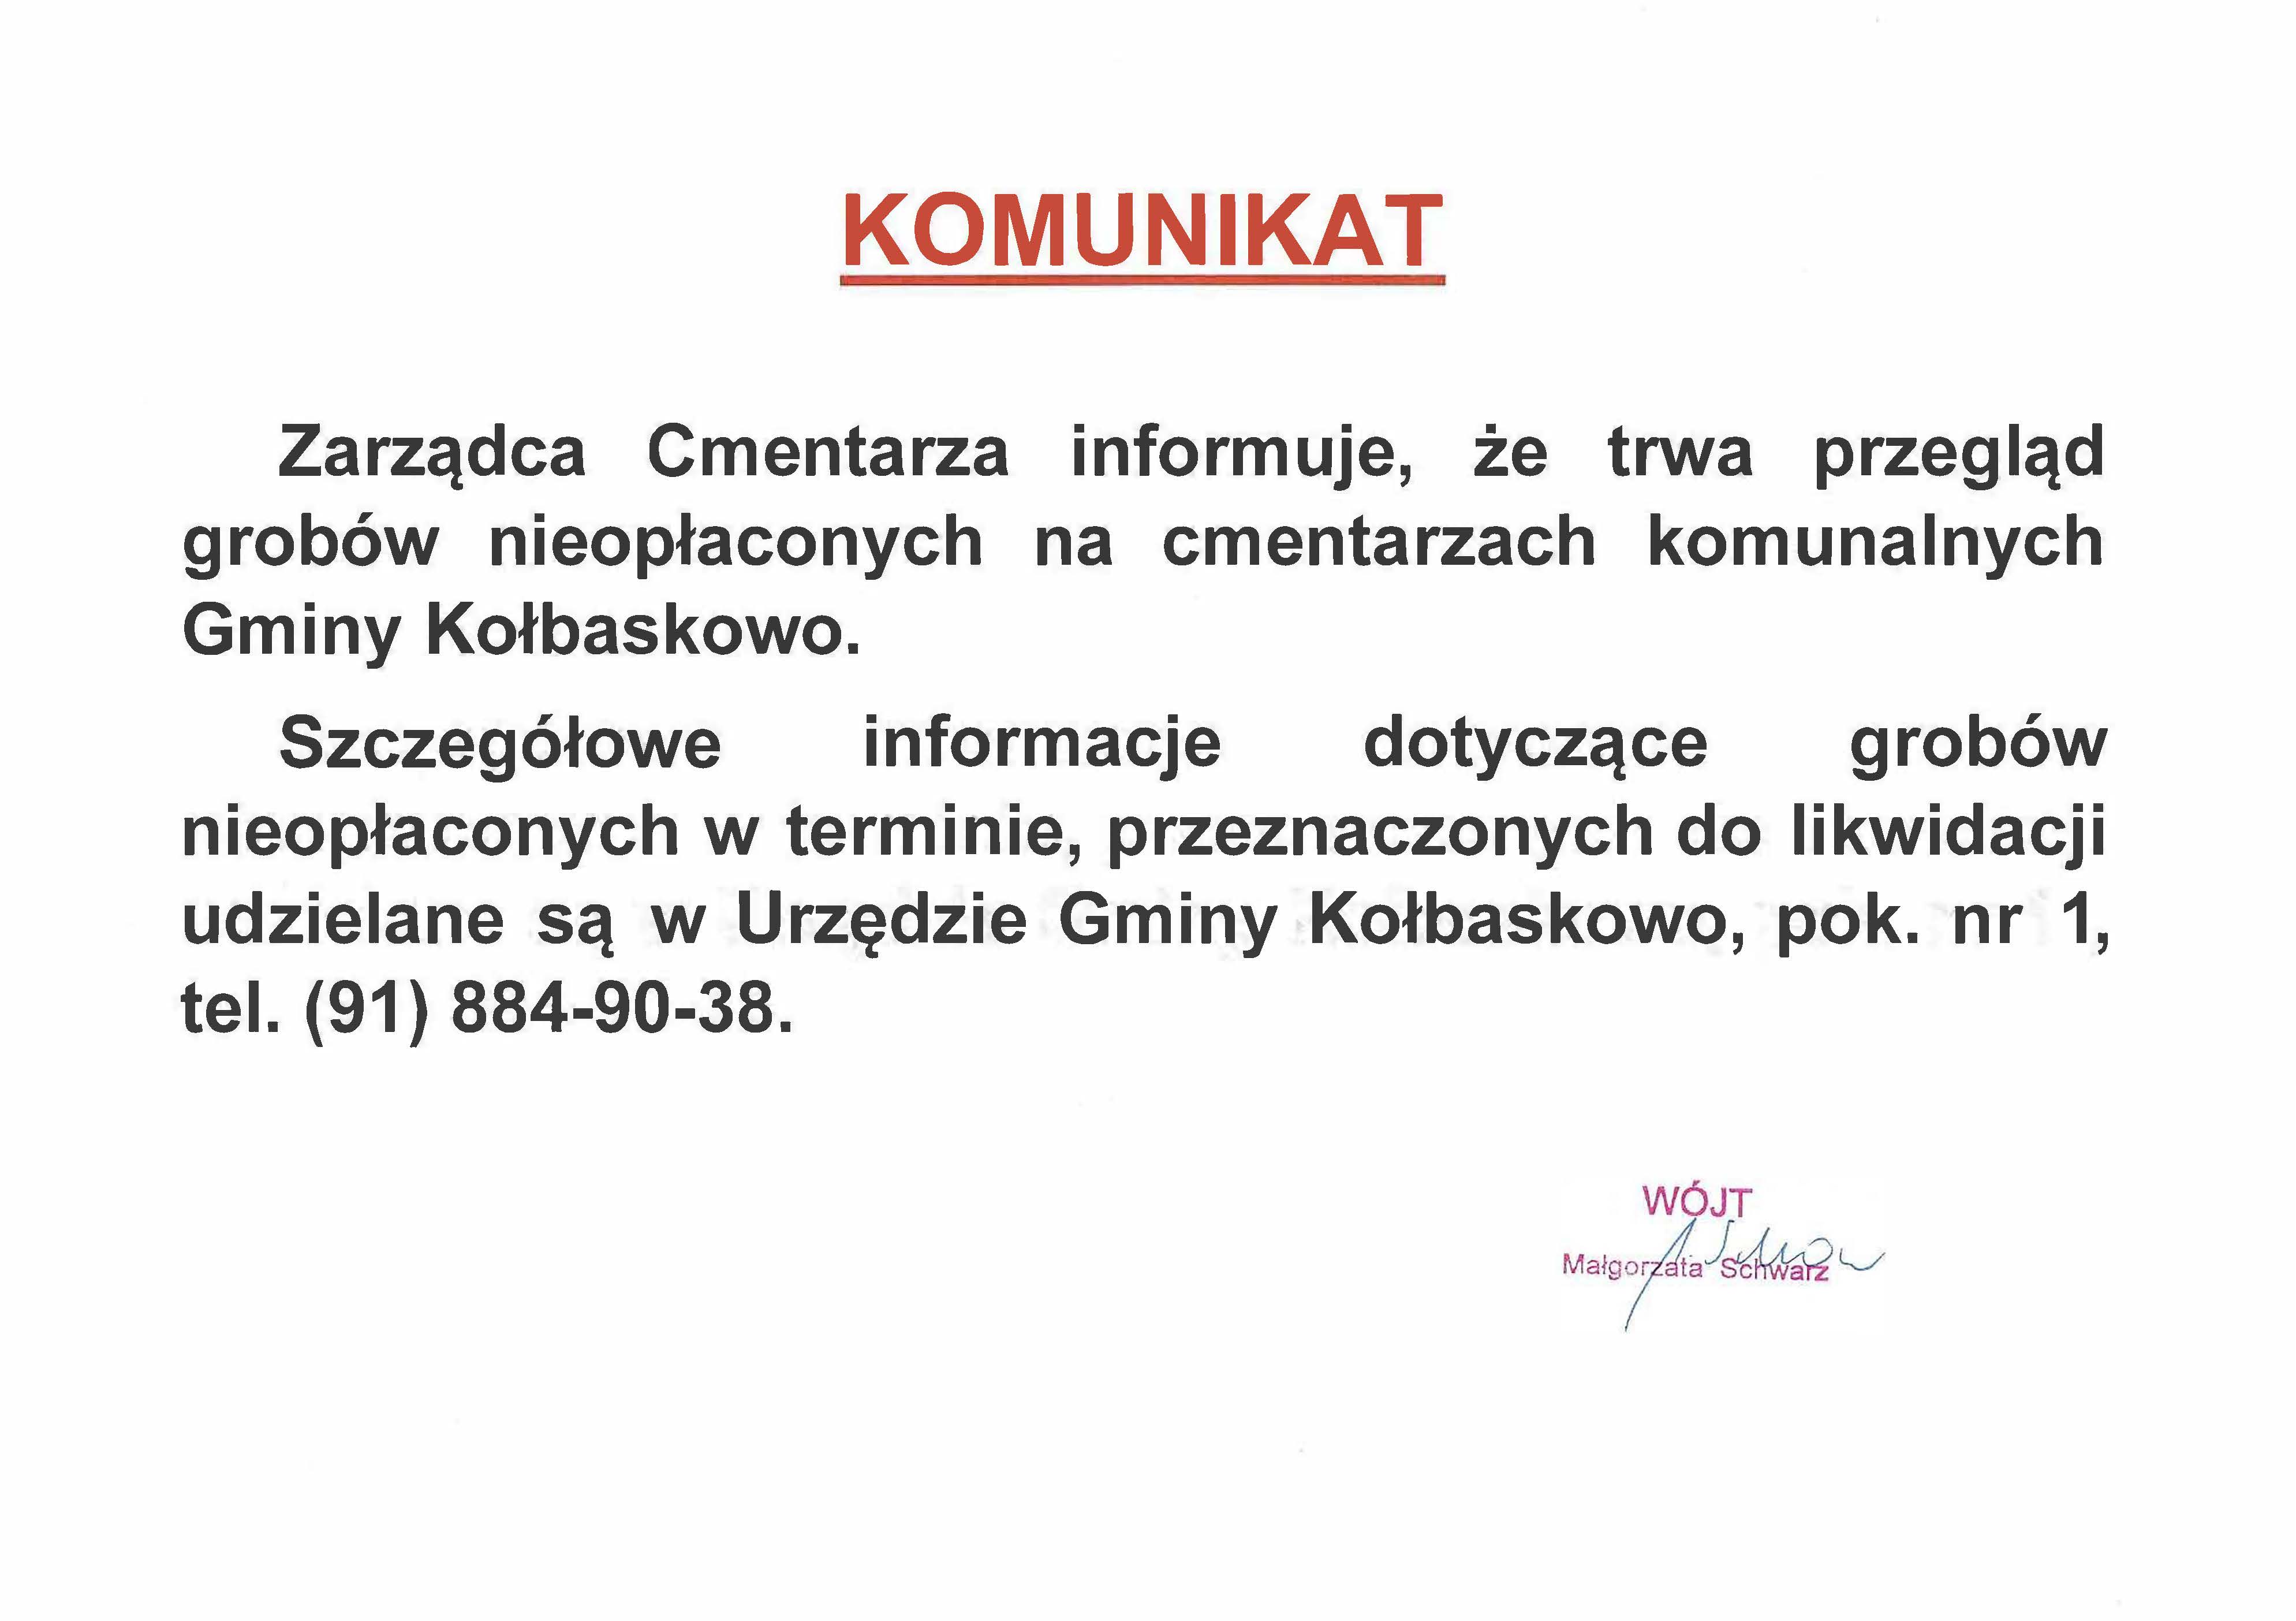 Zarządca Cmentarza informuje, że trwa przegląd grobów nieopłaconych na cmentarzach komunalnych Gminy Kołbaskowo. Szczegółowe informacje dotyczące grobów nieopłaconych w terminie, przeznaczonych do likwidacji udzielane są w Urzędzie Gminy Kołbaskowo, pok. nr 1, tel. (91) 884-90-38.